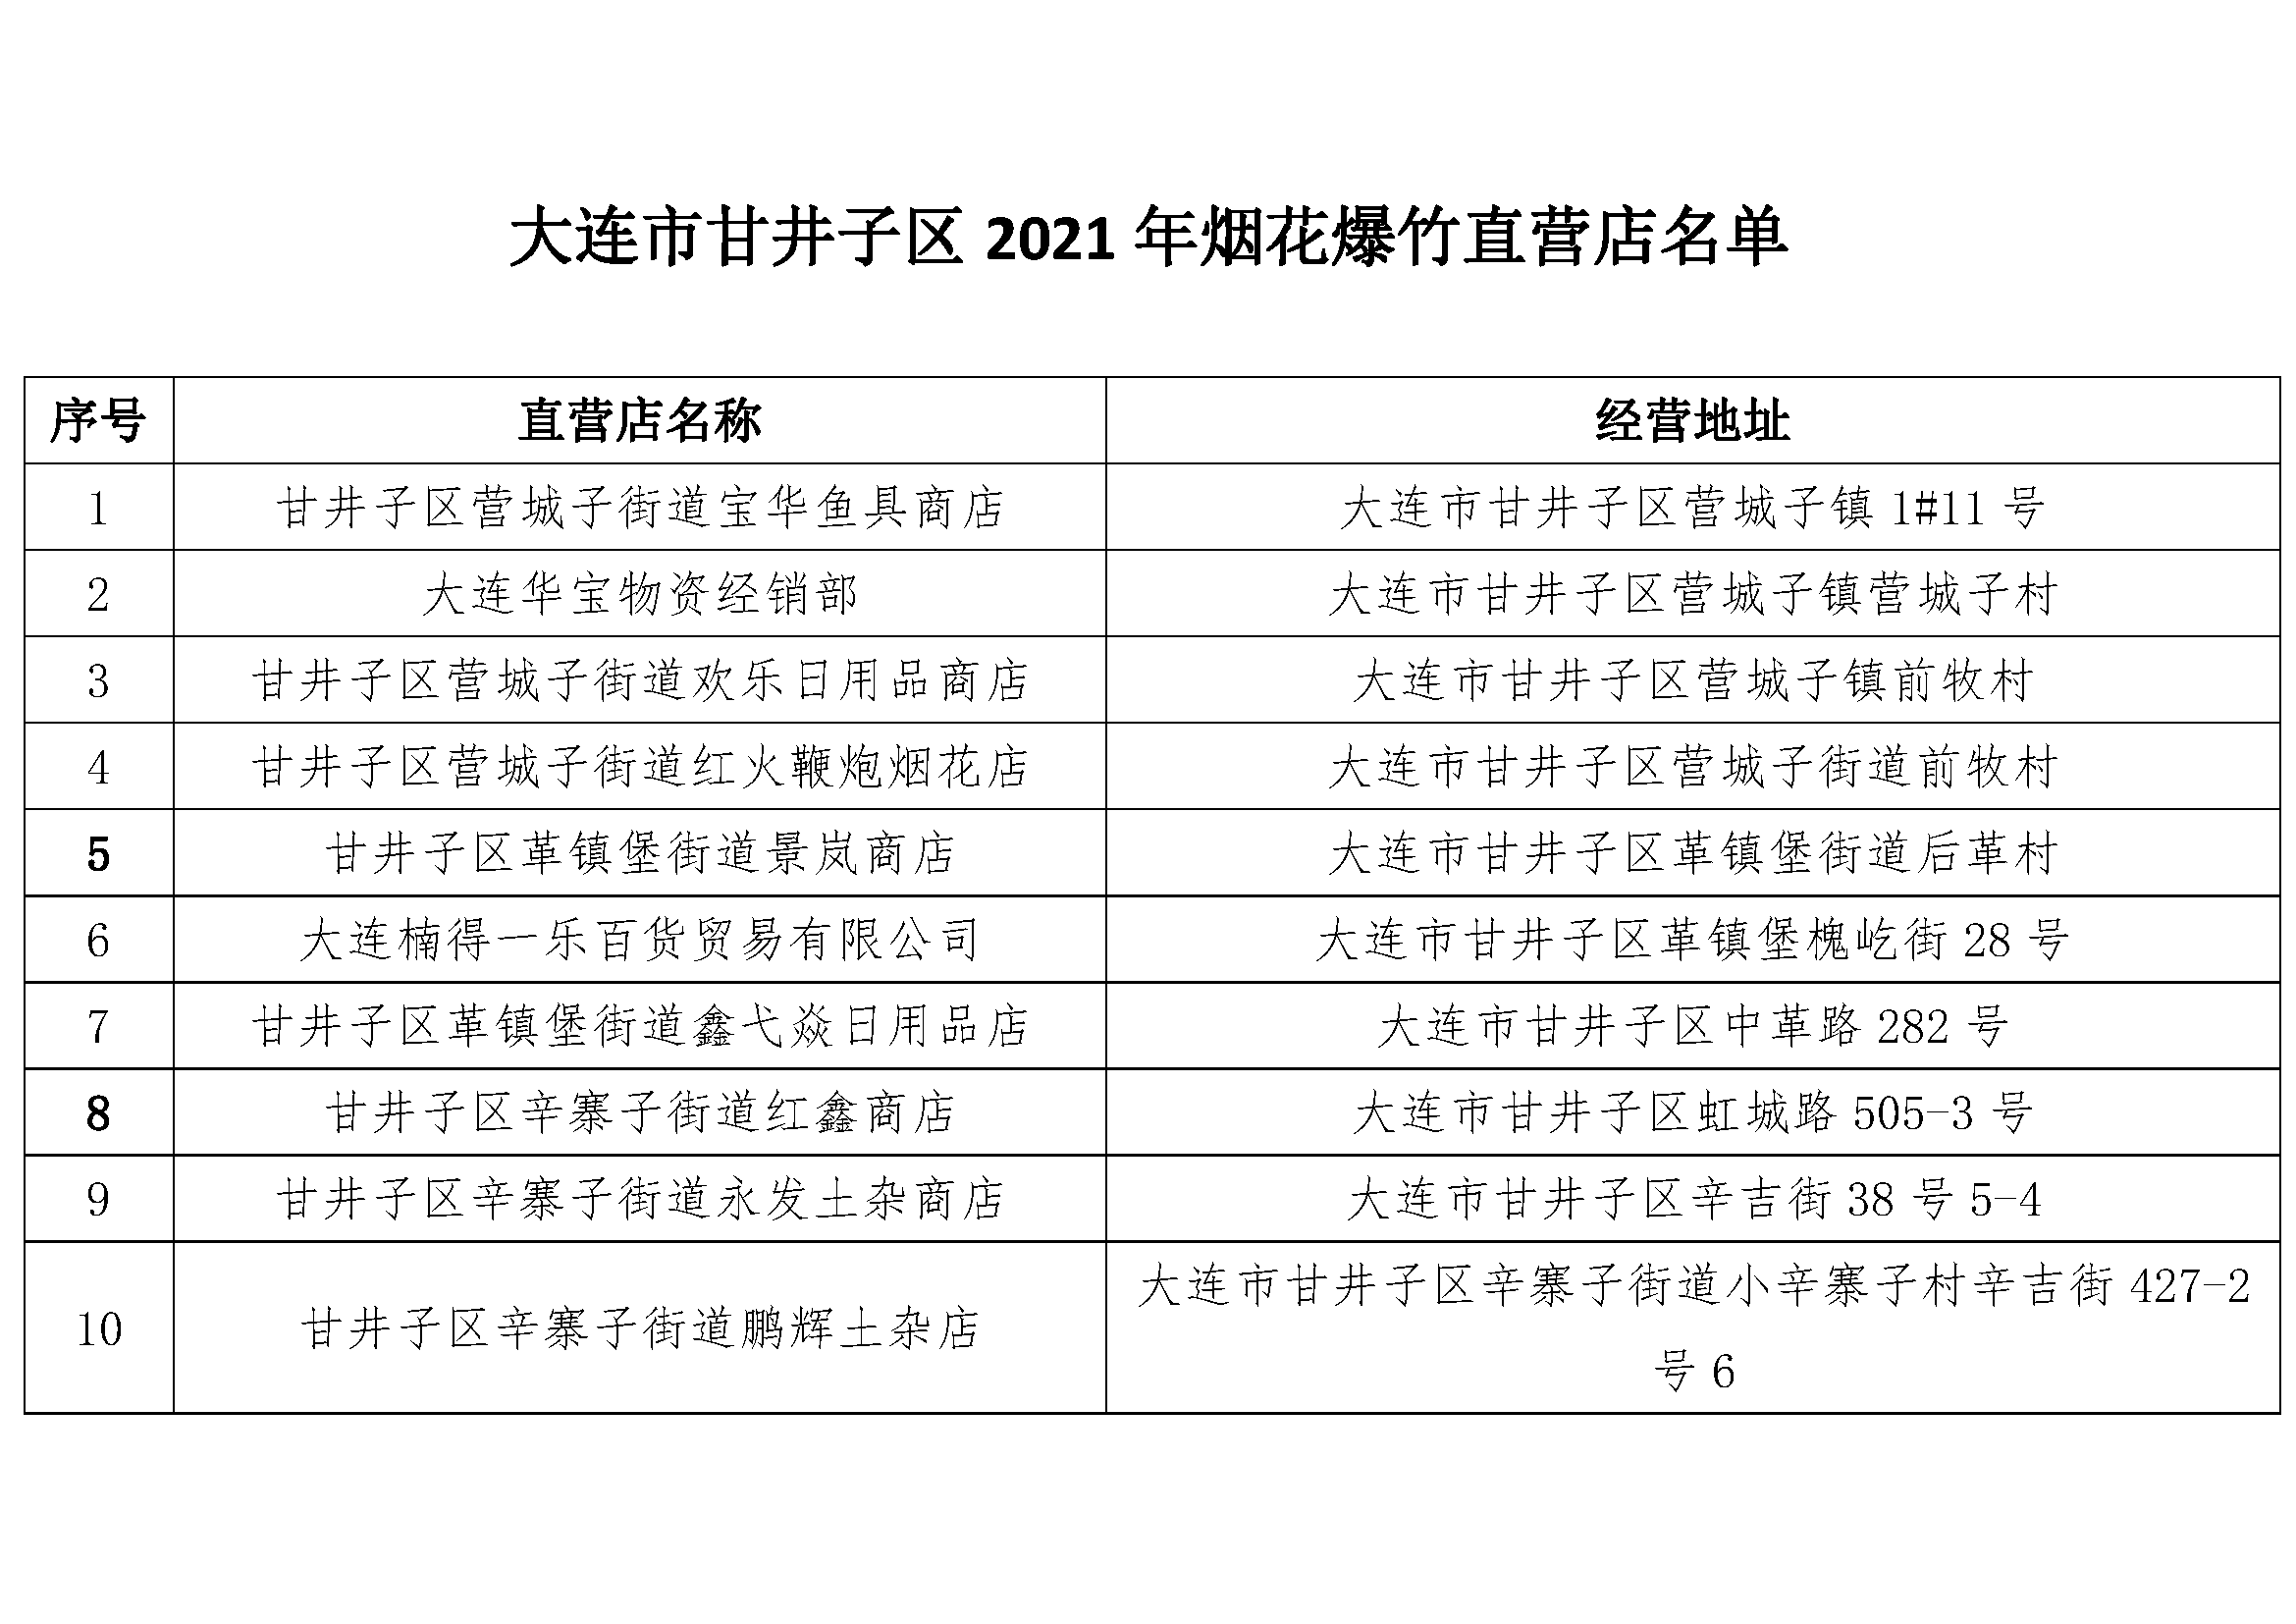 附表:大连市甘井子区2021年烟花爆竹直营店名单